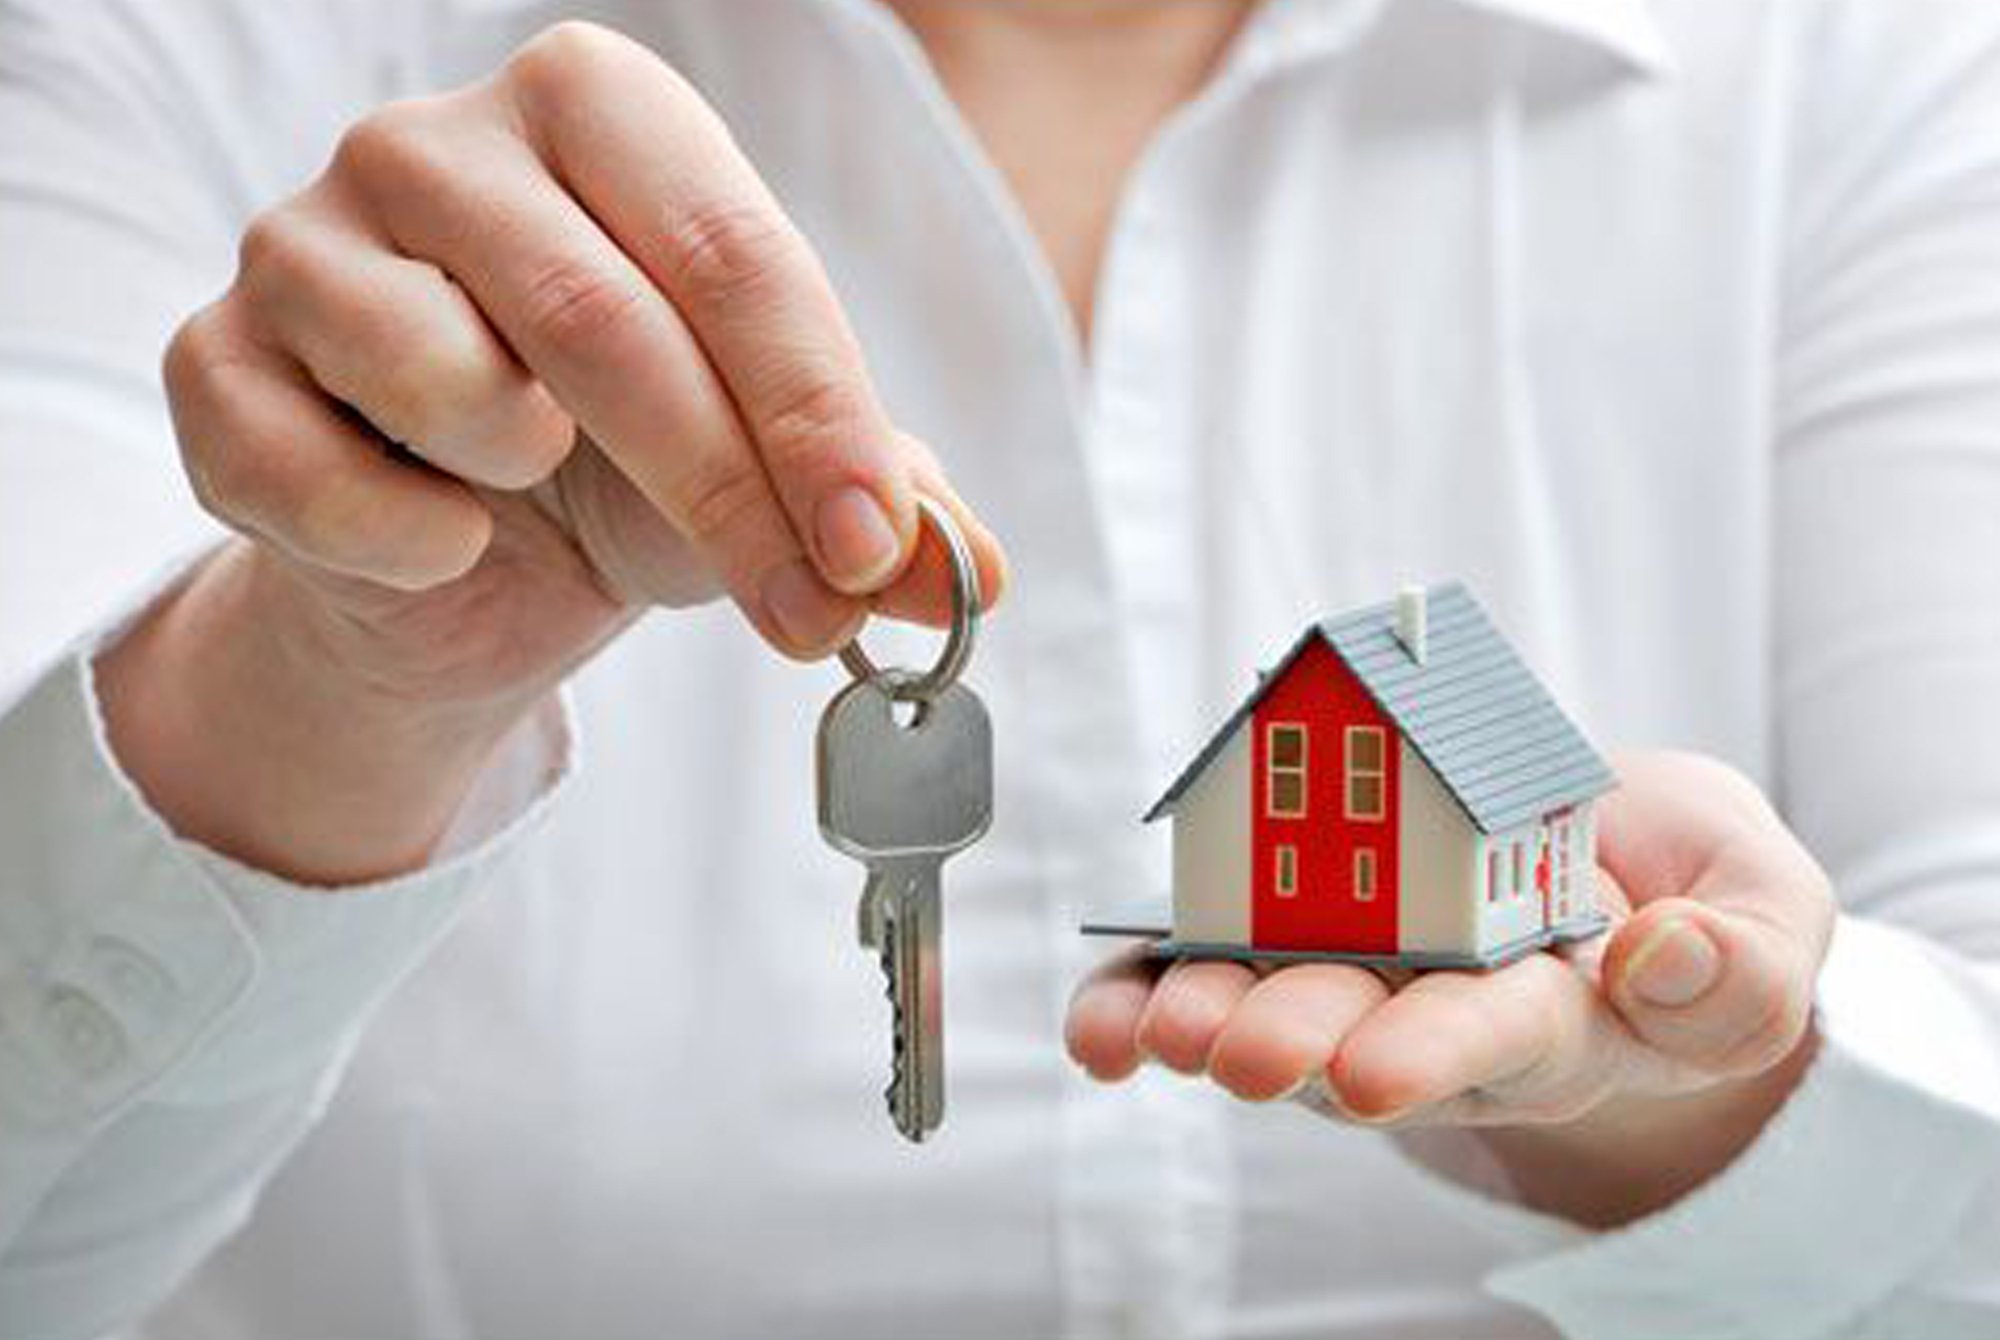 Украинцам сообщили, как узнать реальную стоимость квартир и домов на рынке недвижимости